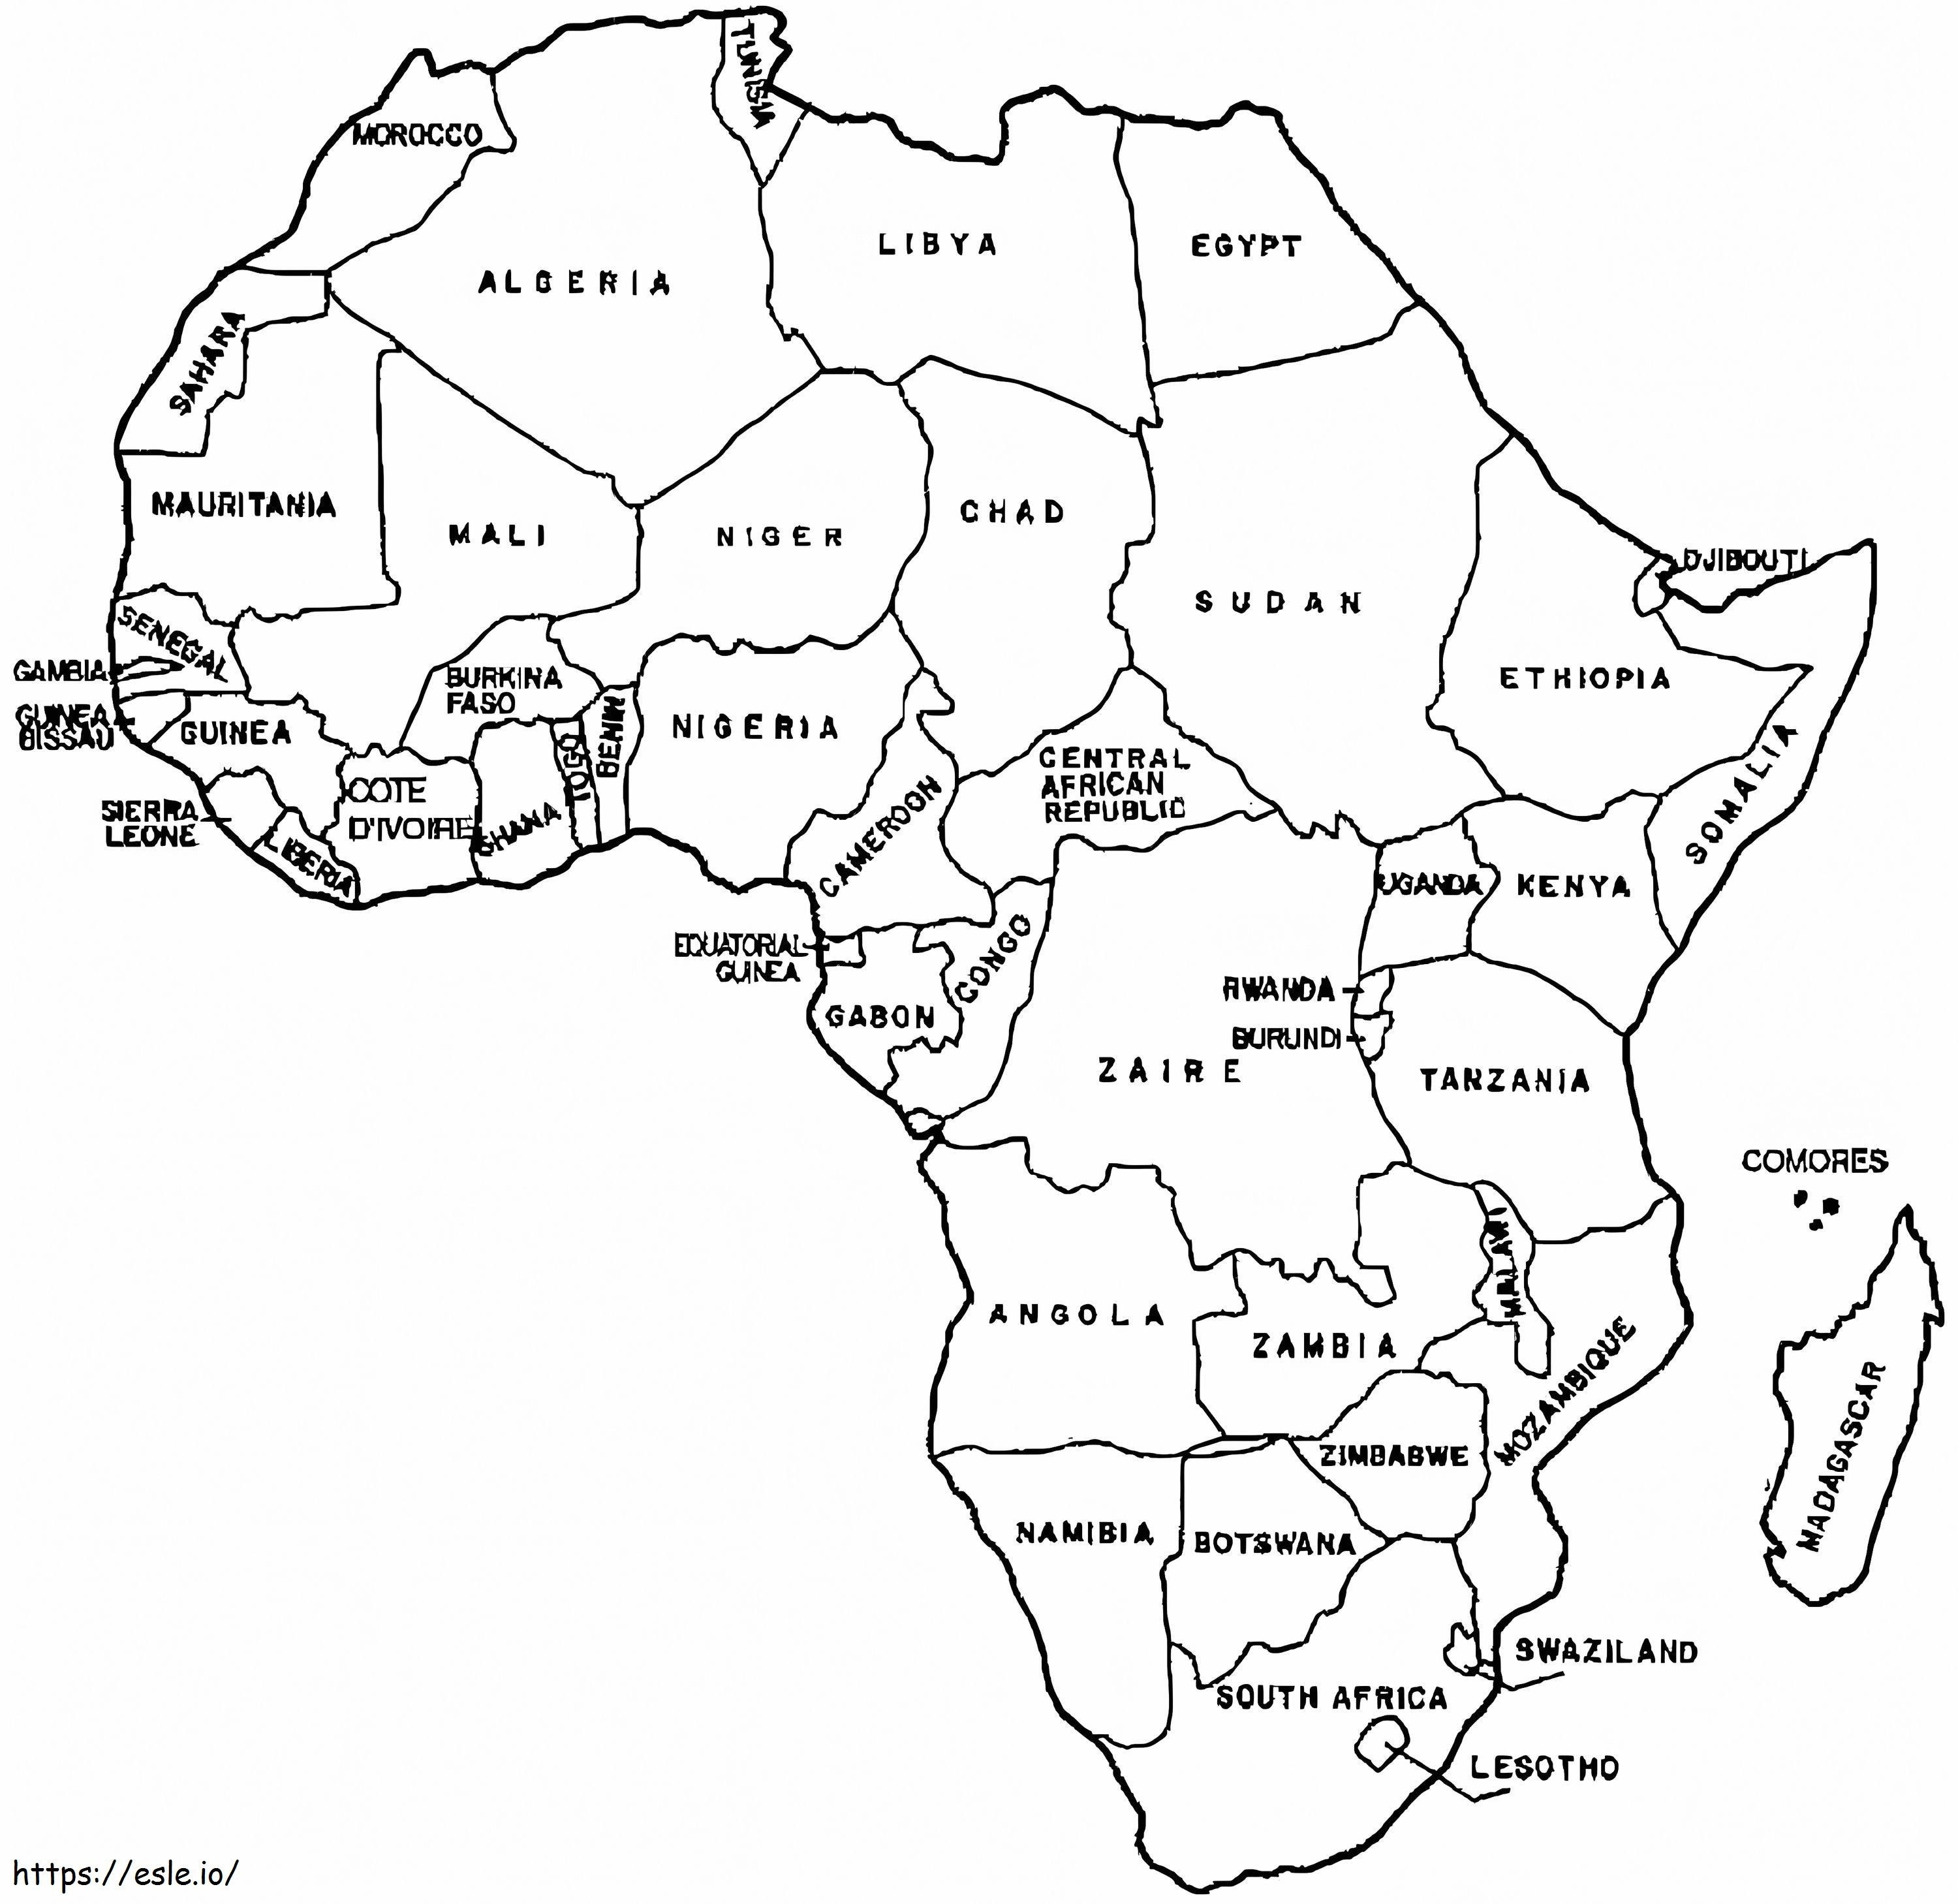 Peta Afrika yang Dapat Dicetak Gambar Mewarnai